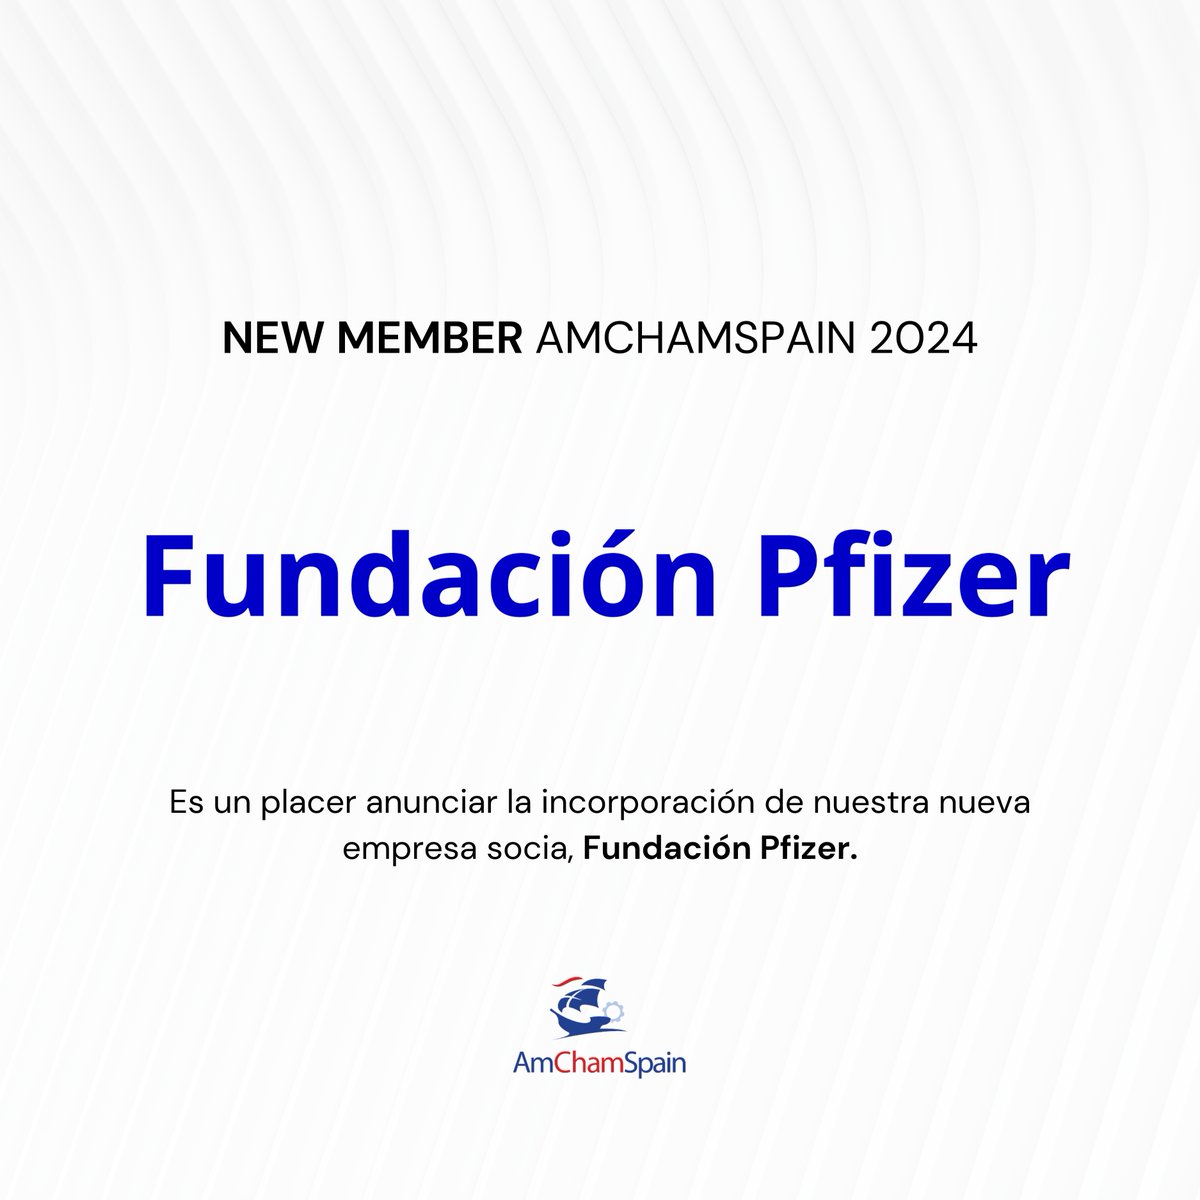 Es un placer anunciar la incorporación de nuestra nueva empresa socia, @Fundpfizer_ES 

La #FundaciónPfizer tiene como objetivo impulsar la innovación científica, social y tecnológica como motor de avance de la salud.

Desde #AmChamSpain os damos la bienvenida.